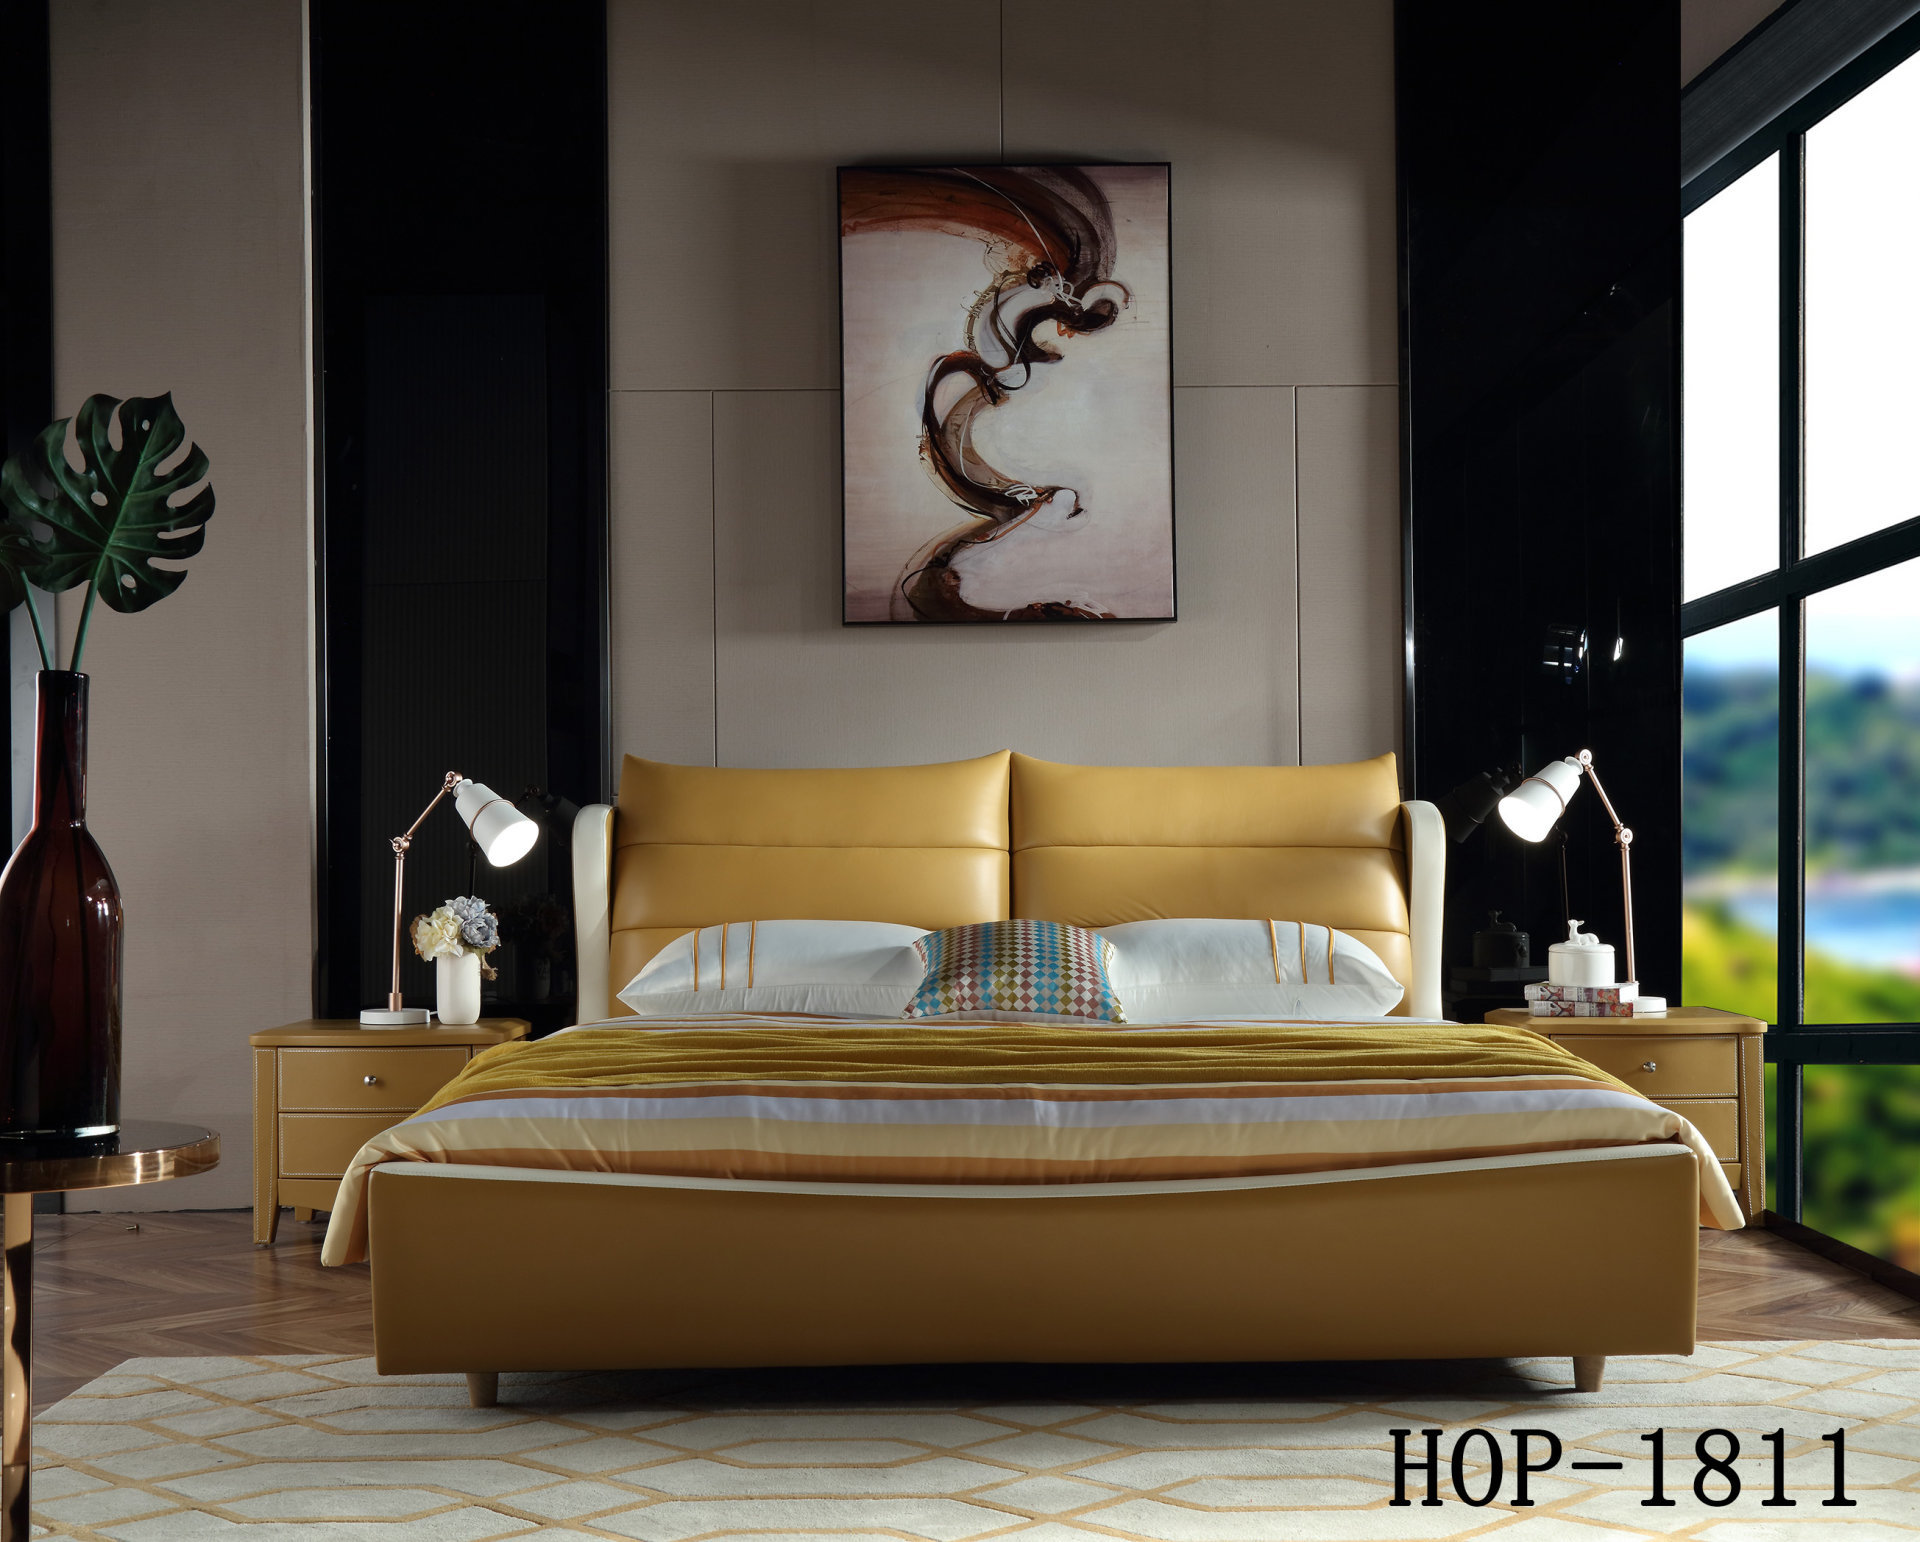 HOP-1811